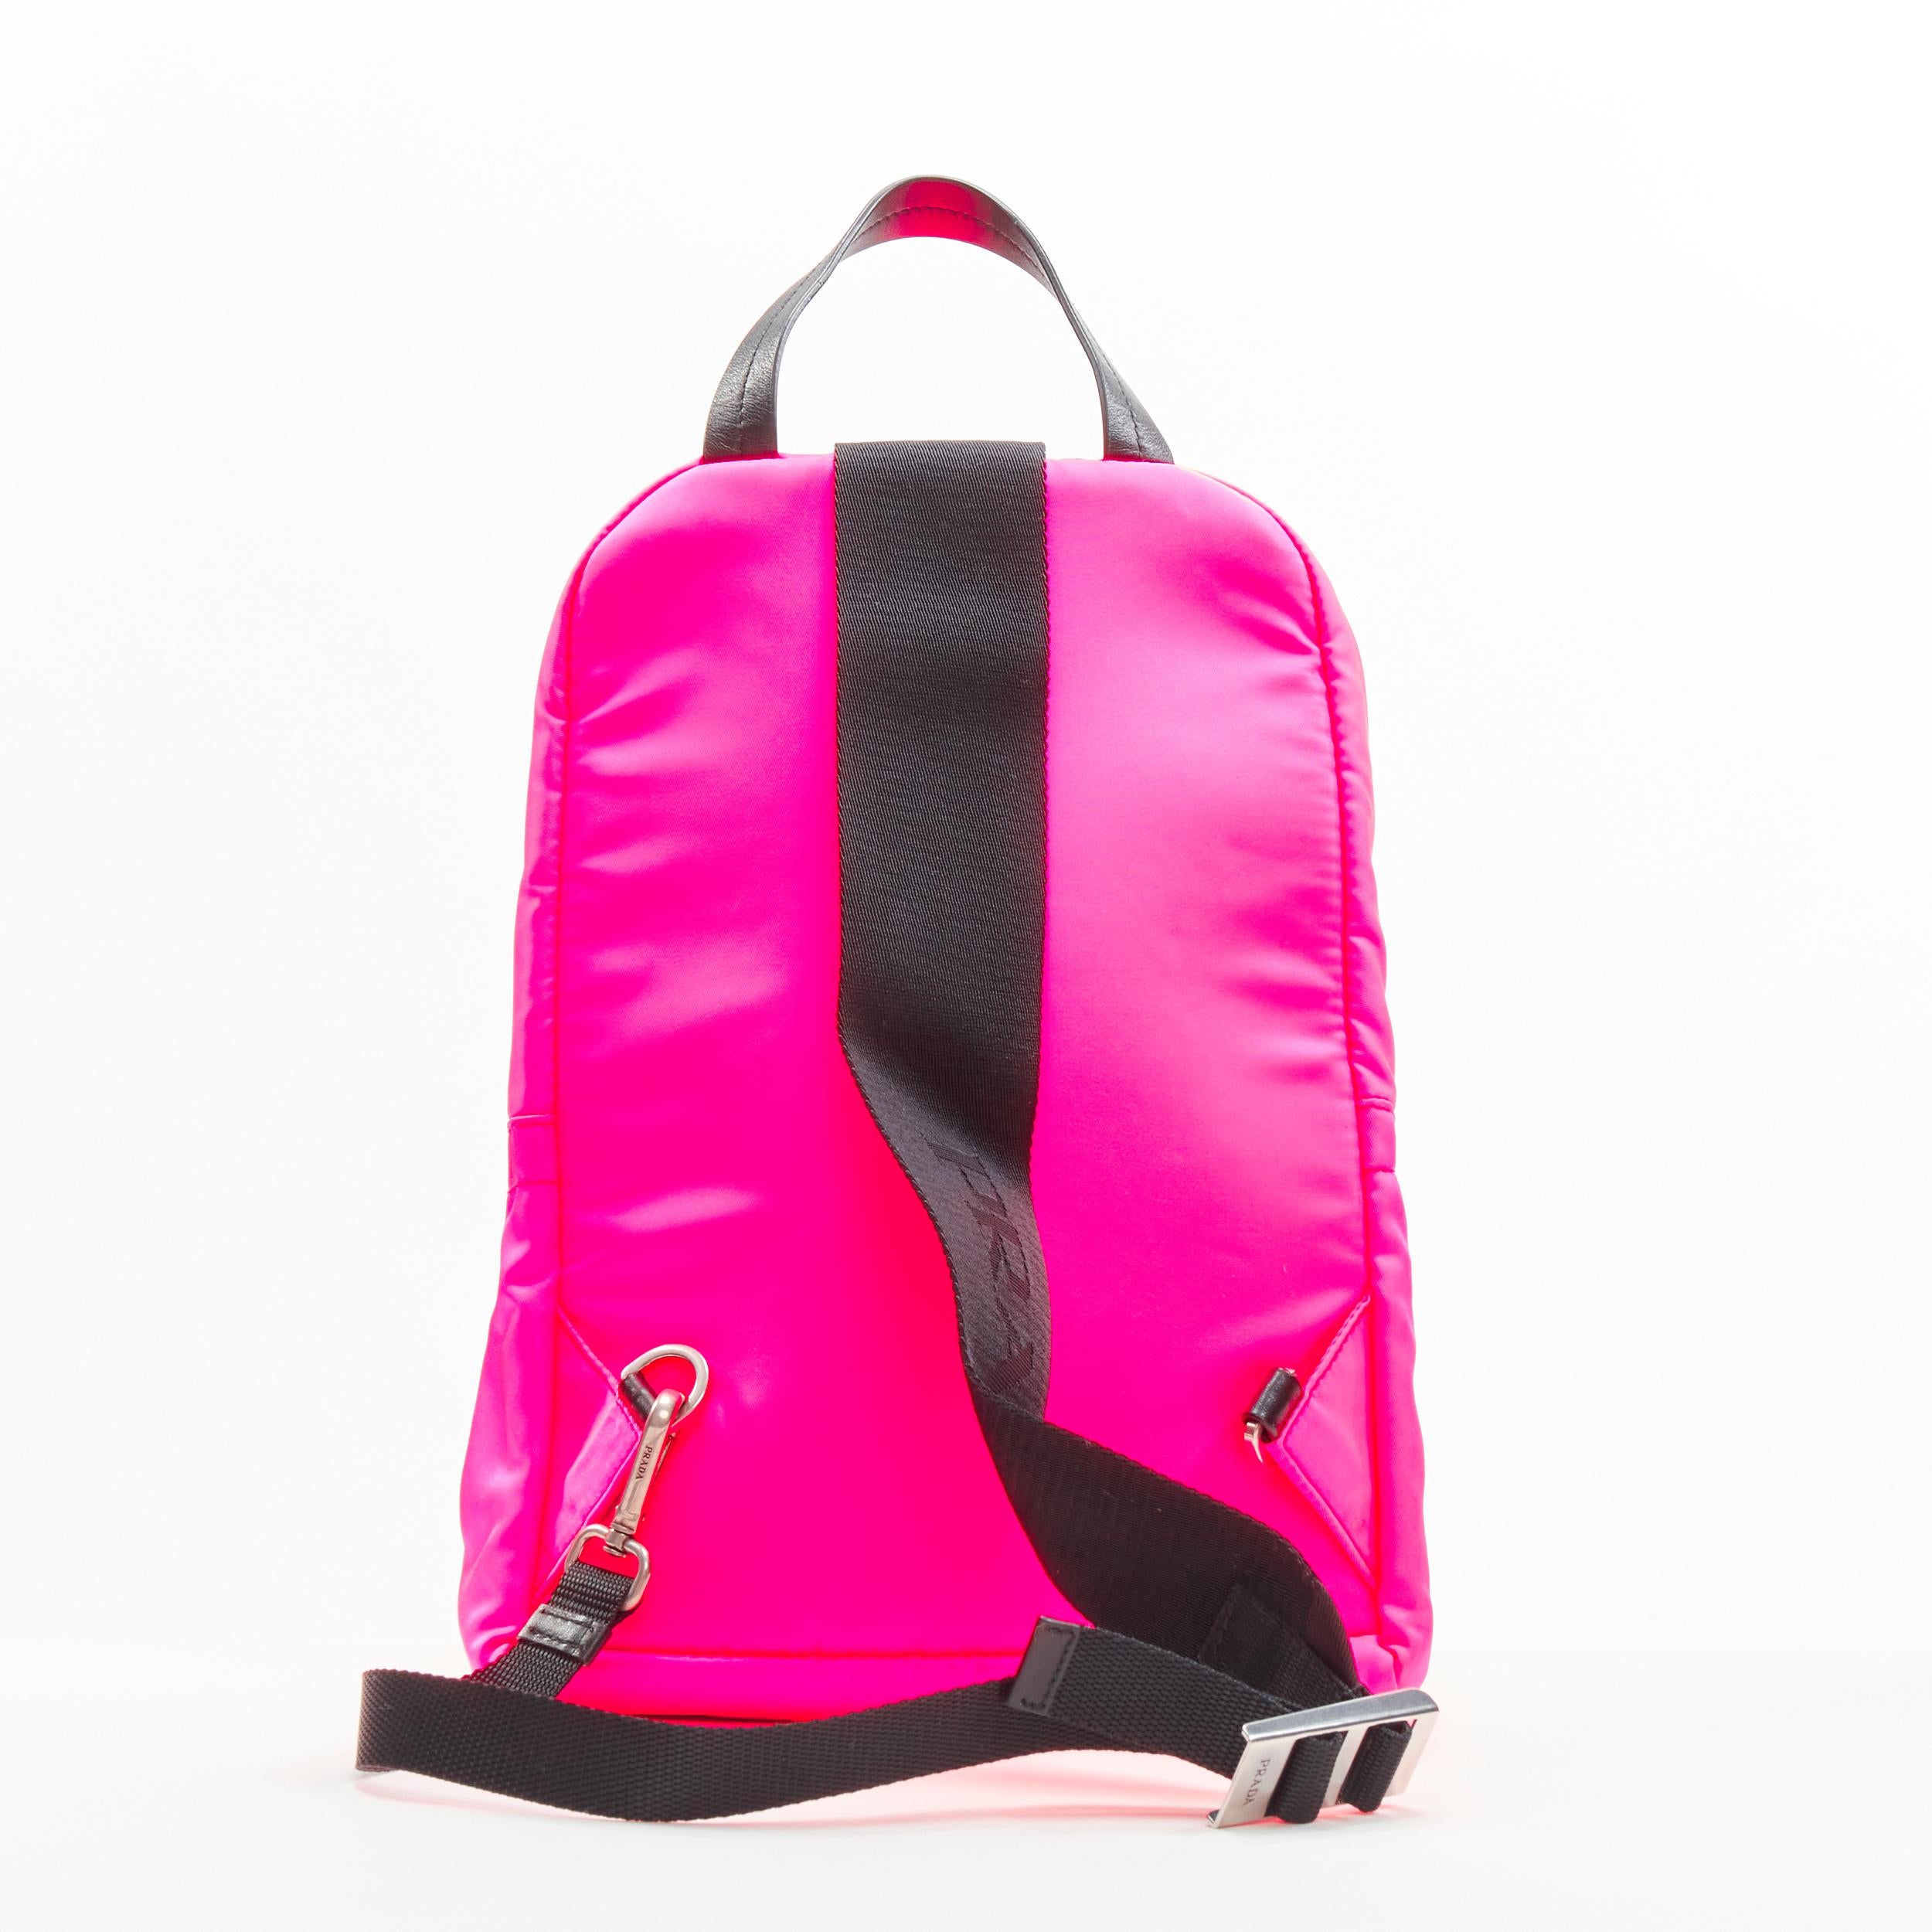 hot pink prada bag